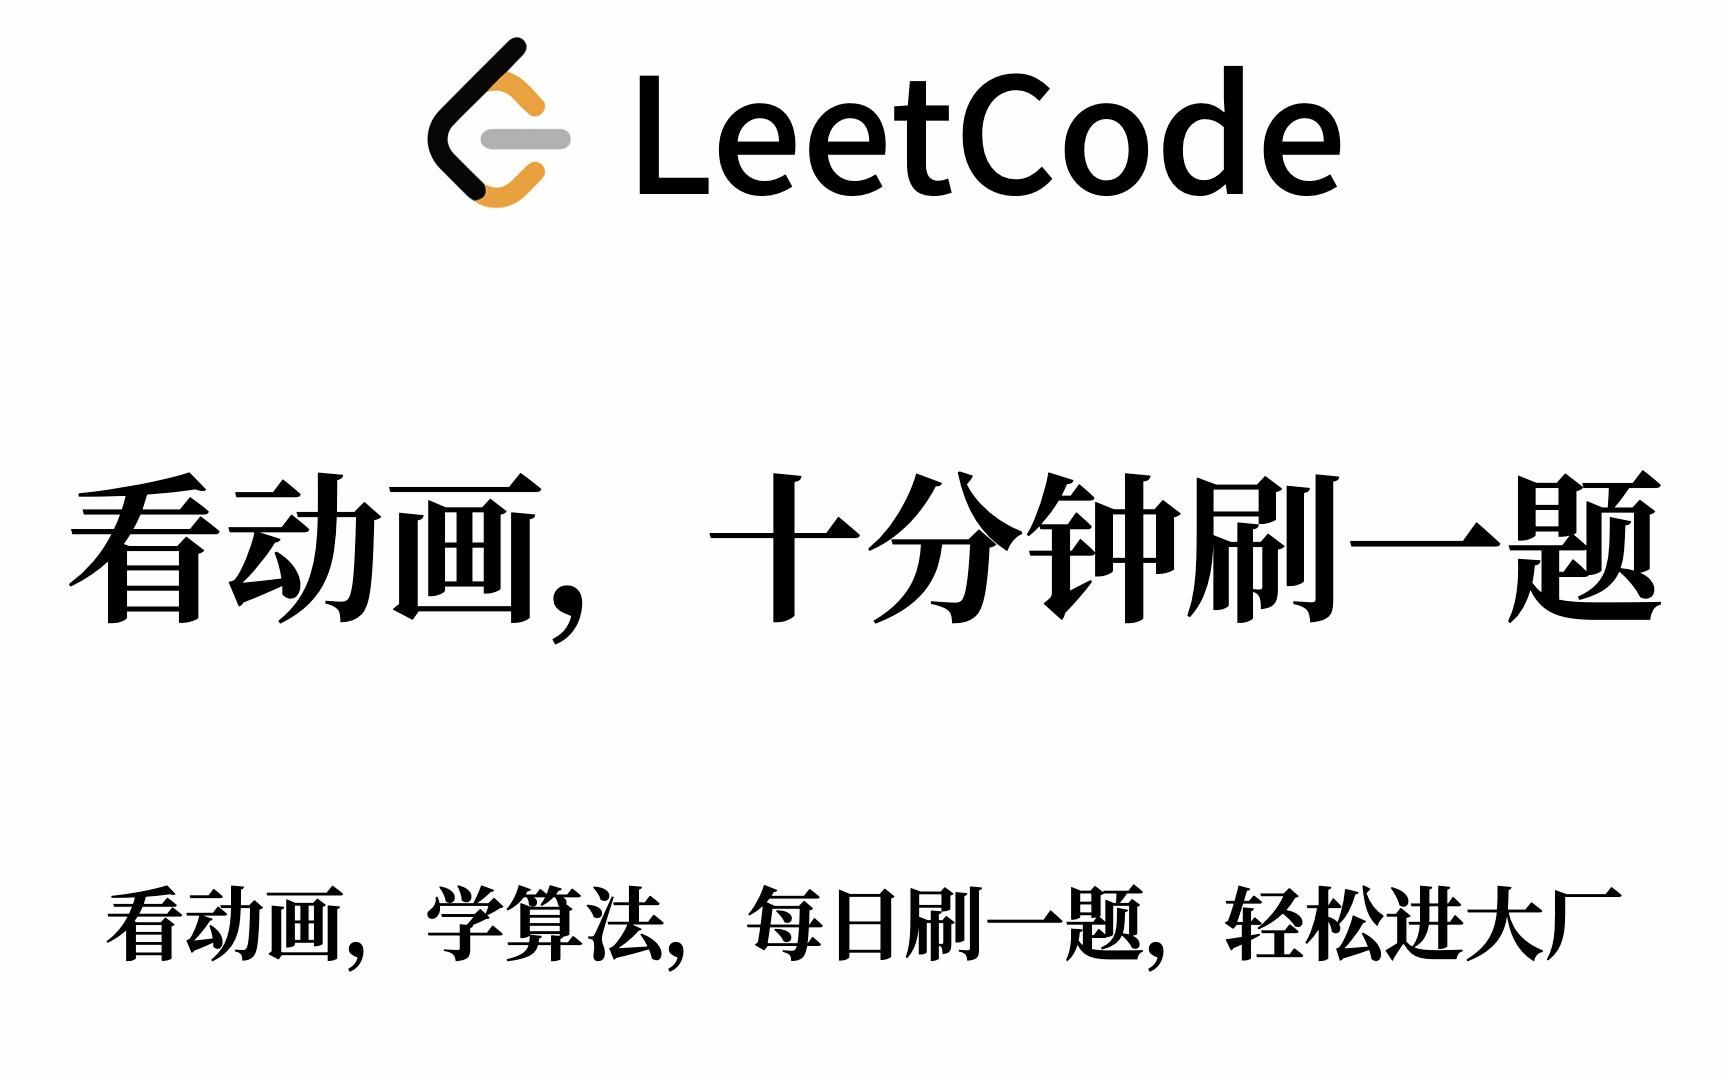 【从零开始刷LeetCode】第四天：合并两个有序链表（动画演示、手写 Java 代码、详细注释、LeetCode 高频算法题）